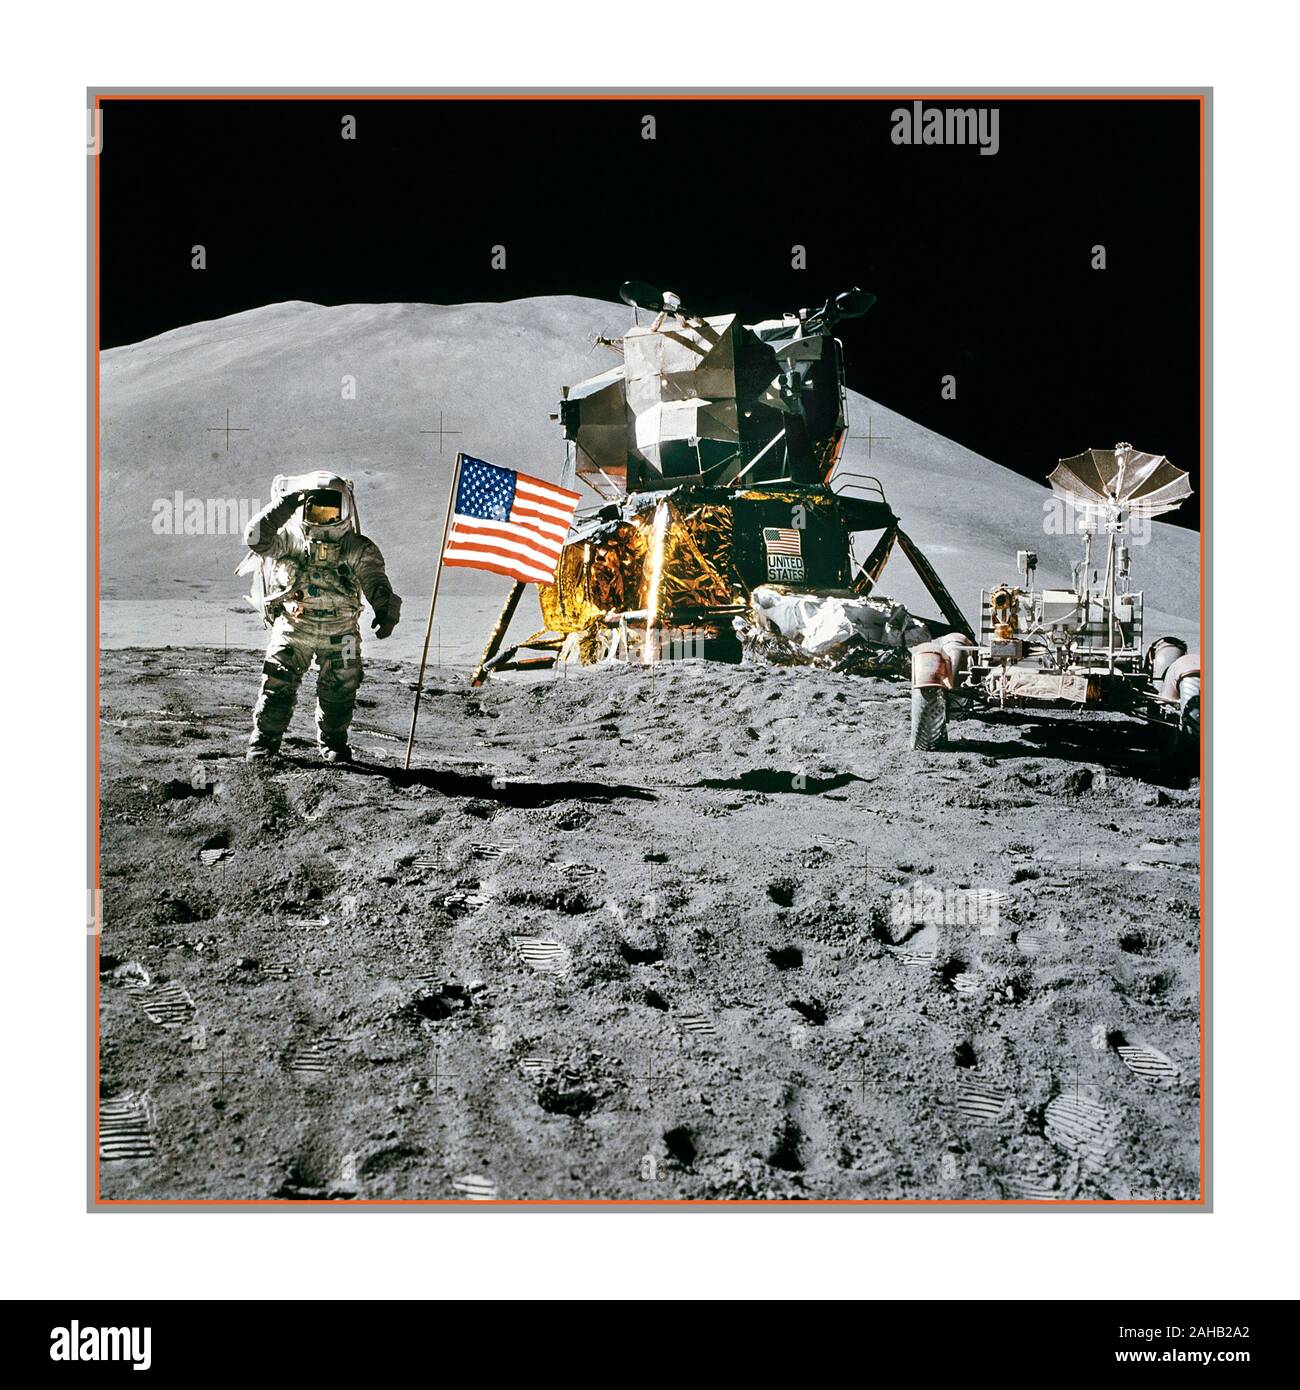 ATTERRISSAGE SUR LA LUNE 1971 Apollo 15 Lunar module Pilot James Irwin salue le drapeau américain sur la lune. L'astronaute James B. Irwin, pilote du module lunaire, salue l'armée tout en se tenant à côté du drapeau américain déployé pendant l'activité extravéhiculaire de surface lunaire (EVA) Apollo 15 au site d'atterrissage de Hadley-Apennine. Le module Lunar 'Falcon' est partiellement visible à droite. Le delta de Hadley en arrière-plan s'élève à environ 4,000 mètres au-dessus de la plaine. Apollo 15 a été la neuvième mission de crewed dans le programme Apollo des États-Unis, et la quatrième à atterrir sur la Lune. Banque D'Images